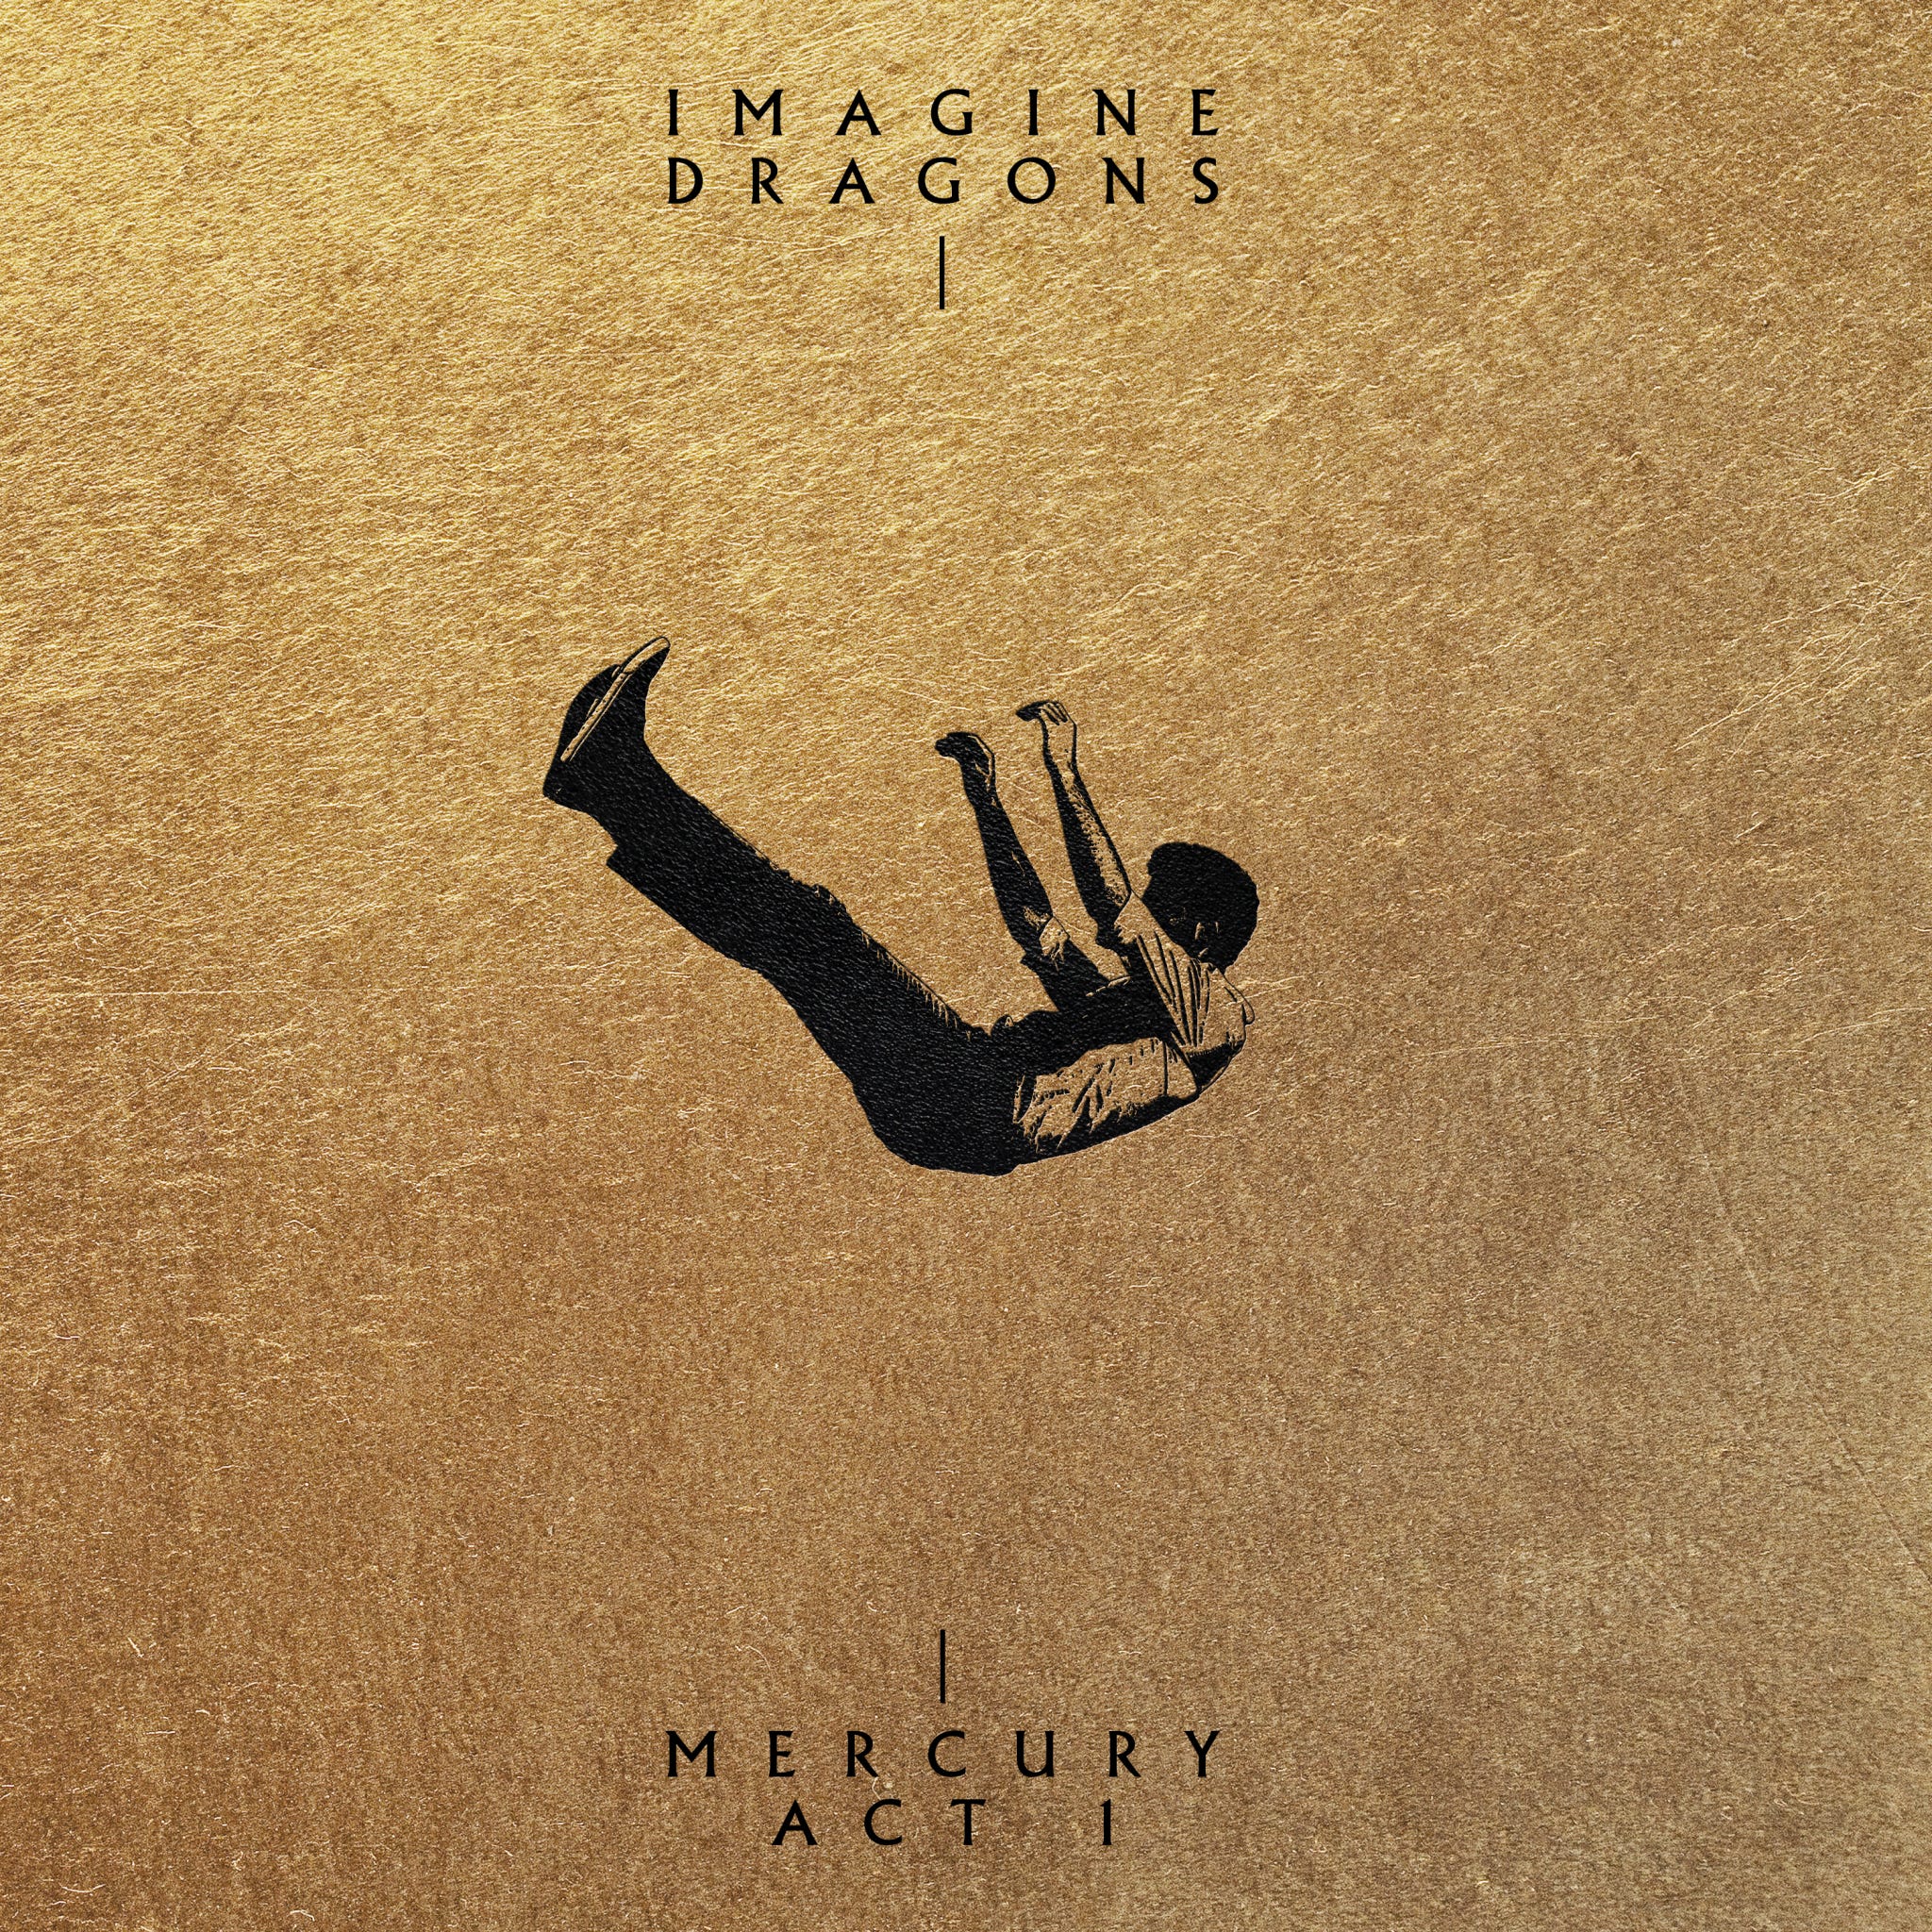 new imagine dragons album 2015